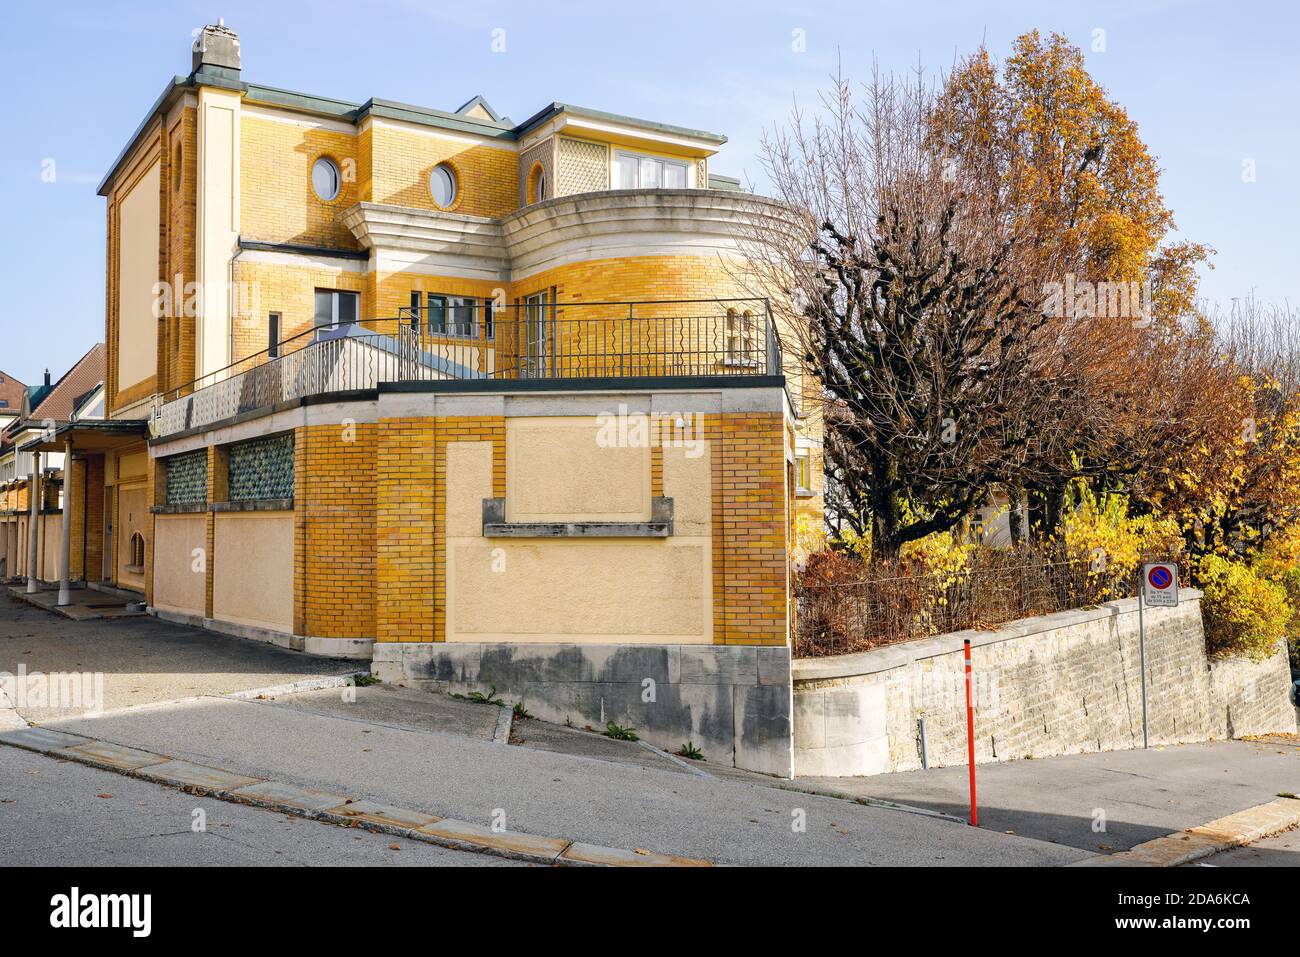 Villa Turque oder Villa Schwob, entworfen vom schweizerisch-französischen Architekten Le Corbusier, La Chaux-de-Fonds; Kanton Neuchâtel, Schweiz. Stockfoto